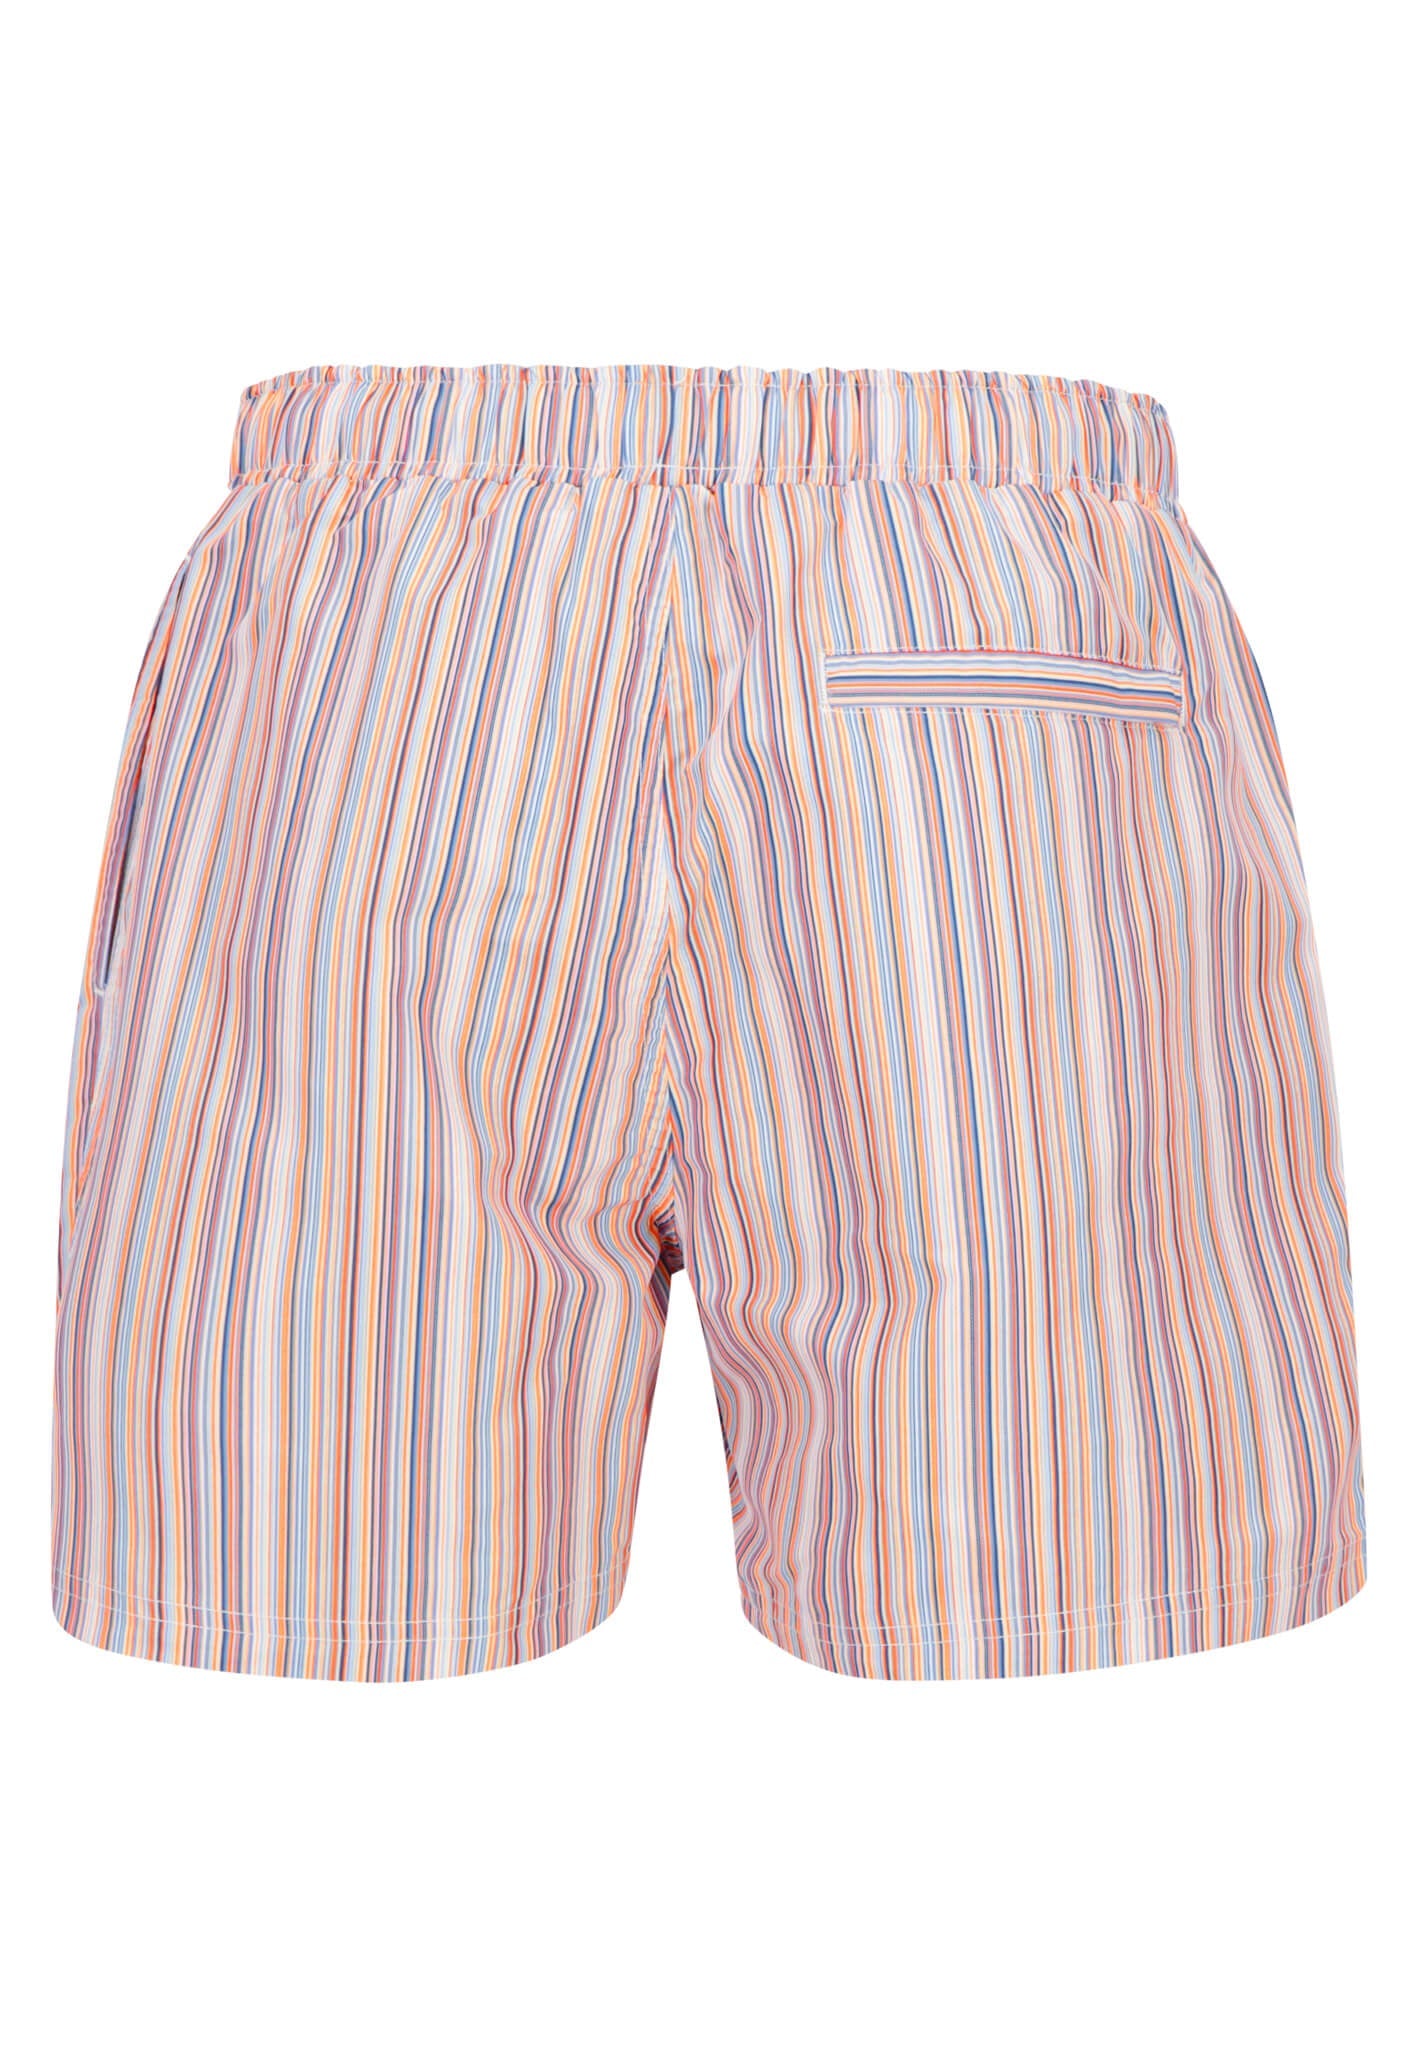 Fynch Hatton Striped Swim Shorts - Tangerine